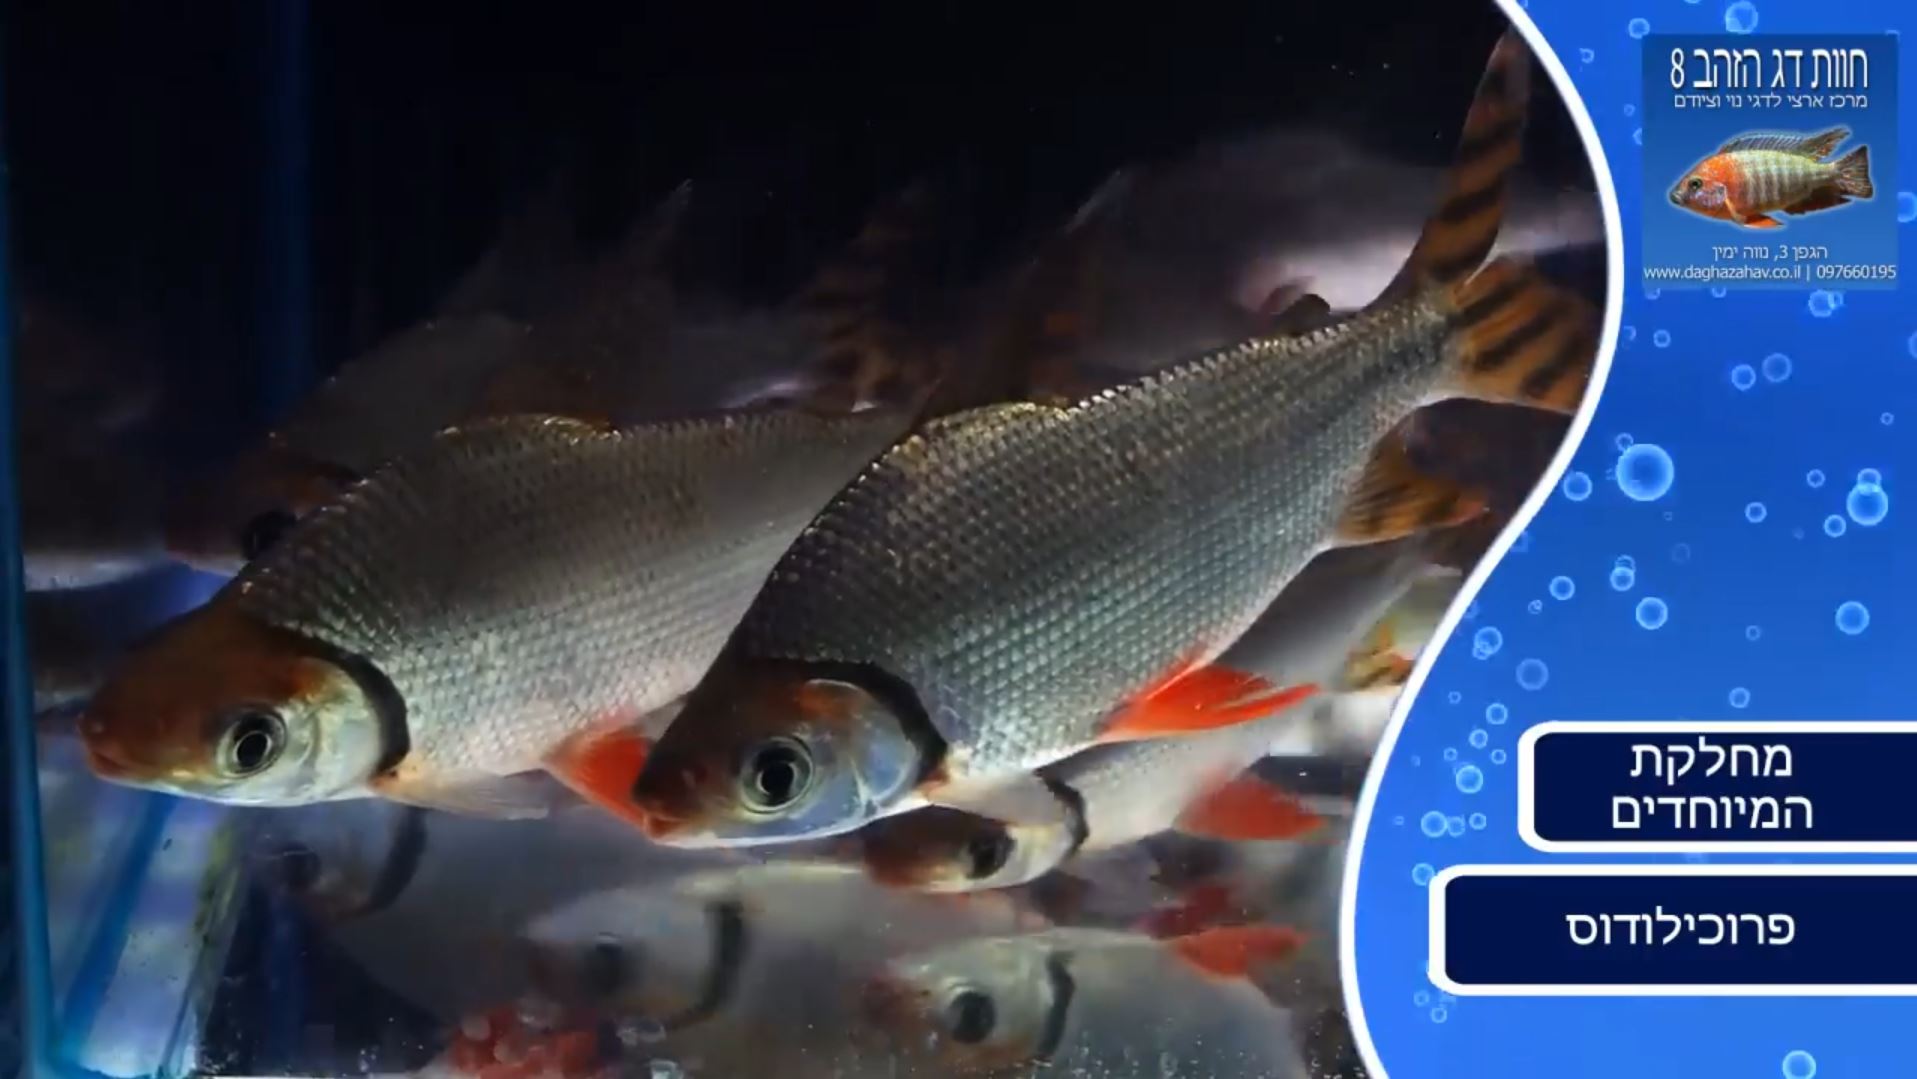 דגי פרוכילודוס - צילום מתוך הסרטון